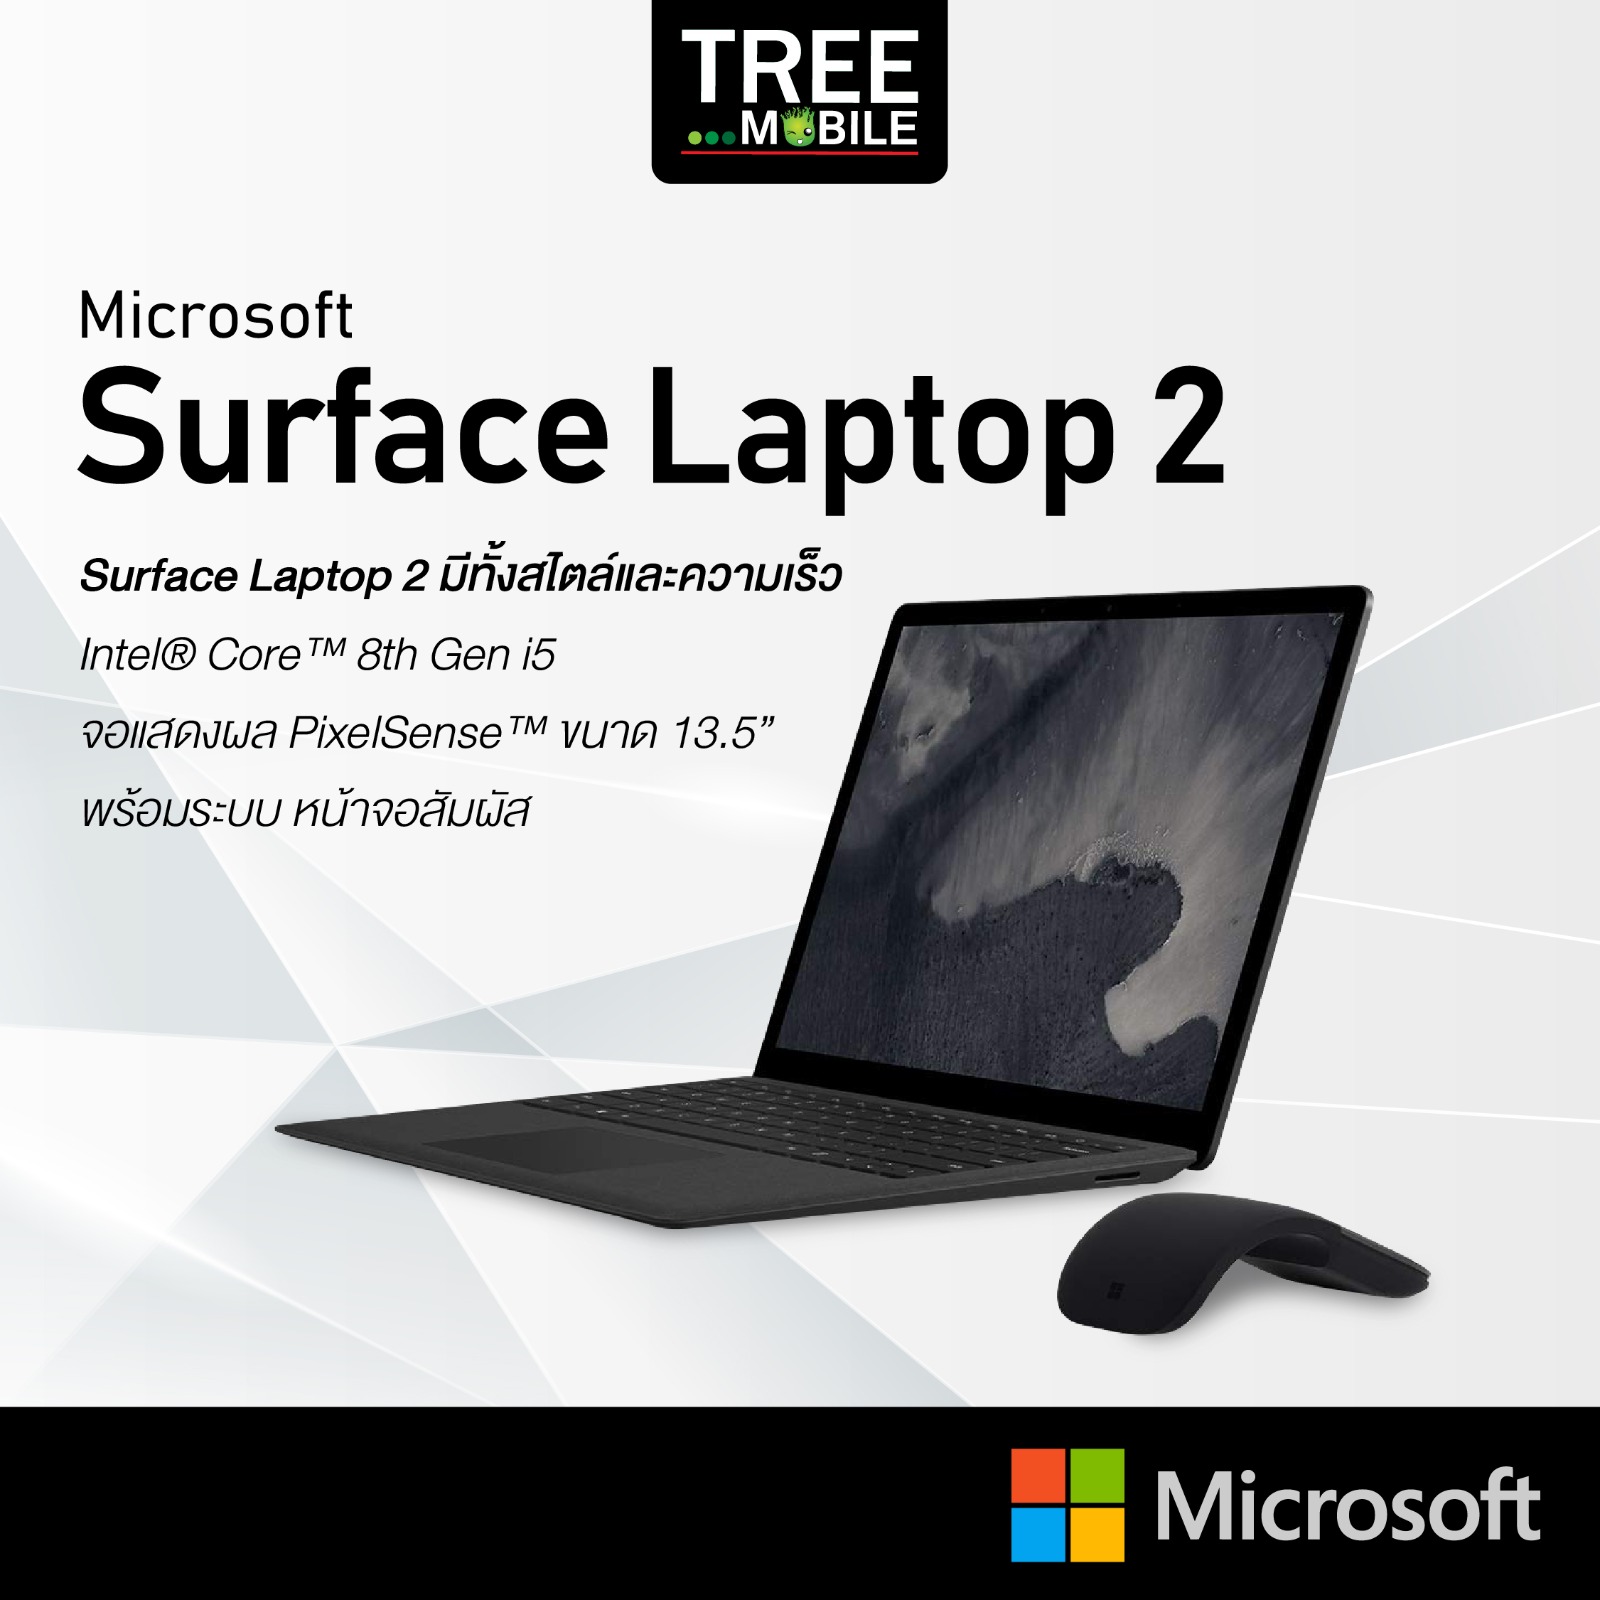 เเล็ปท็อป MicroSoft Surface Laptop2 i5 8/256GB เครื่องใหม่ ศูนย์ไทย ประกัน 1 ปี Window10 pro i5 น้ำหนักเบา TreeMobile